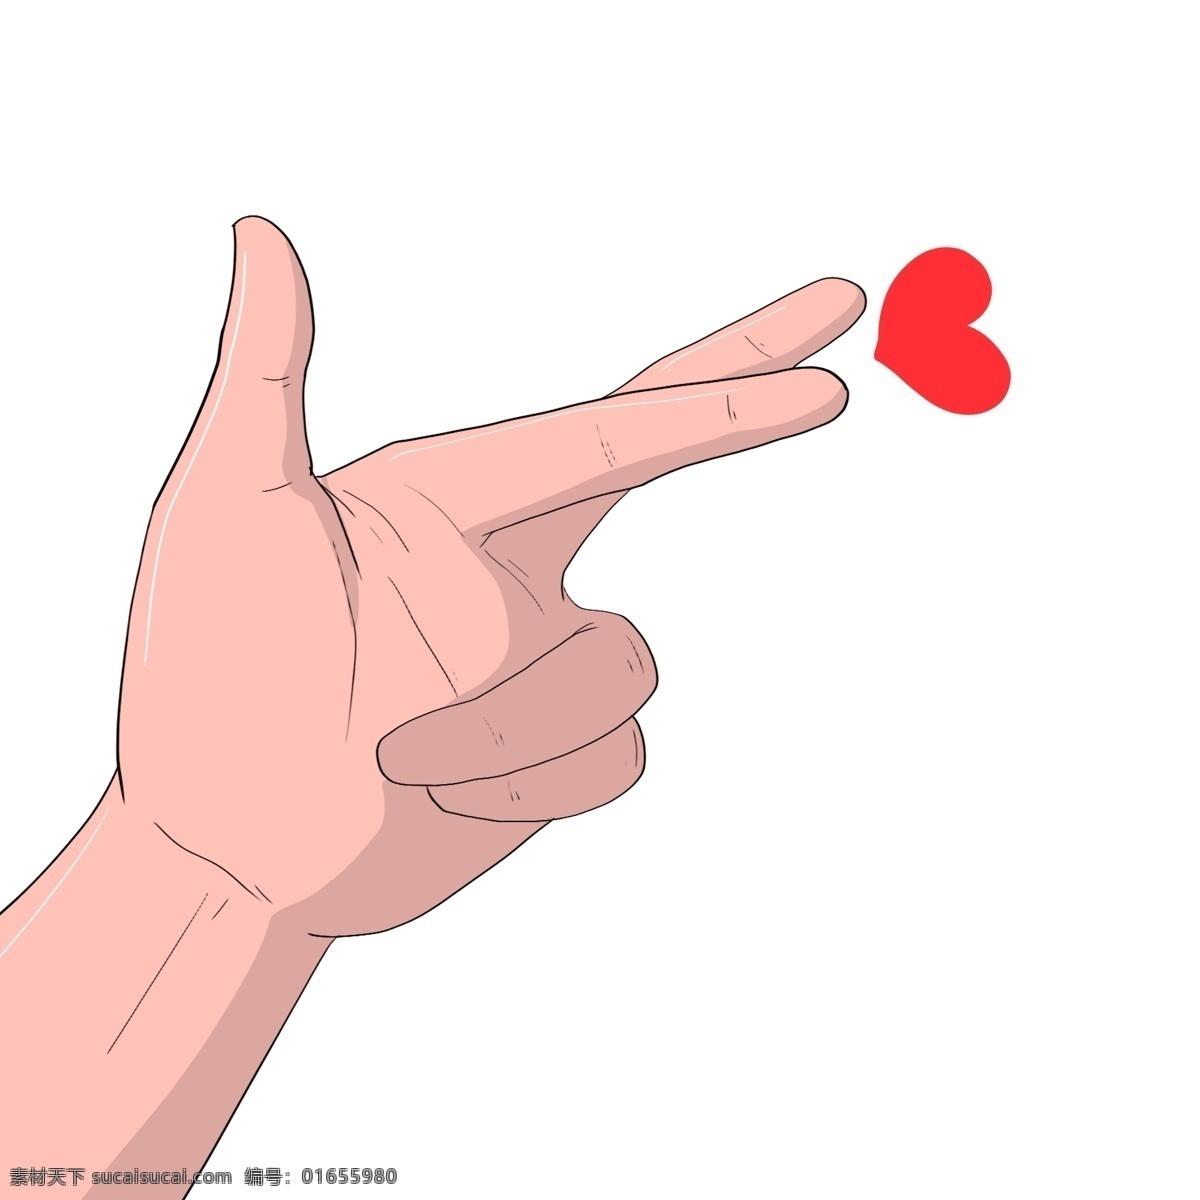 手绘 左手 心 手势 插画 长长的手指 红色的爱心 表白的红心 卡通插画 手绘手势插画 创意比心插画